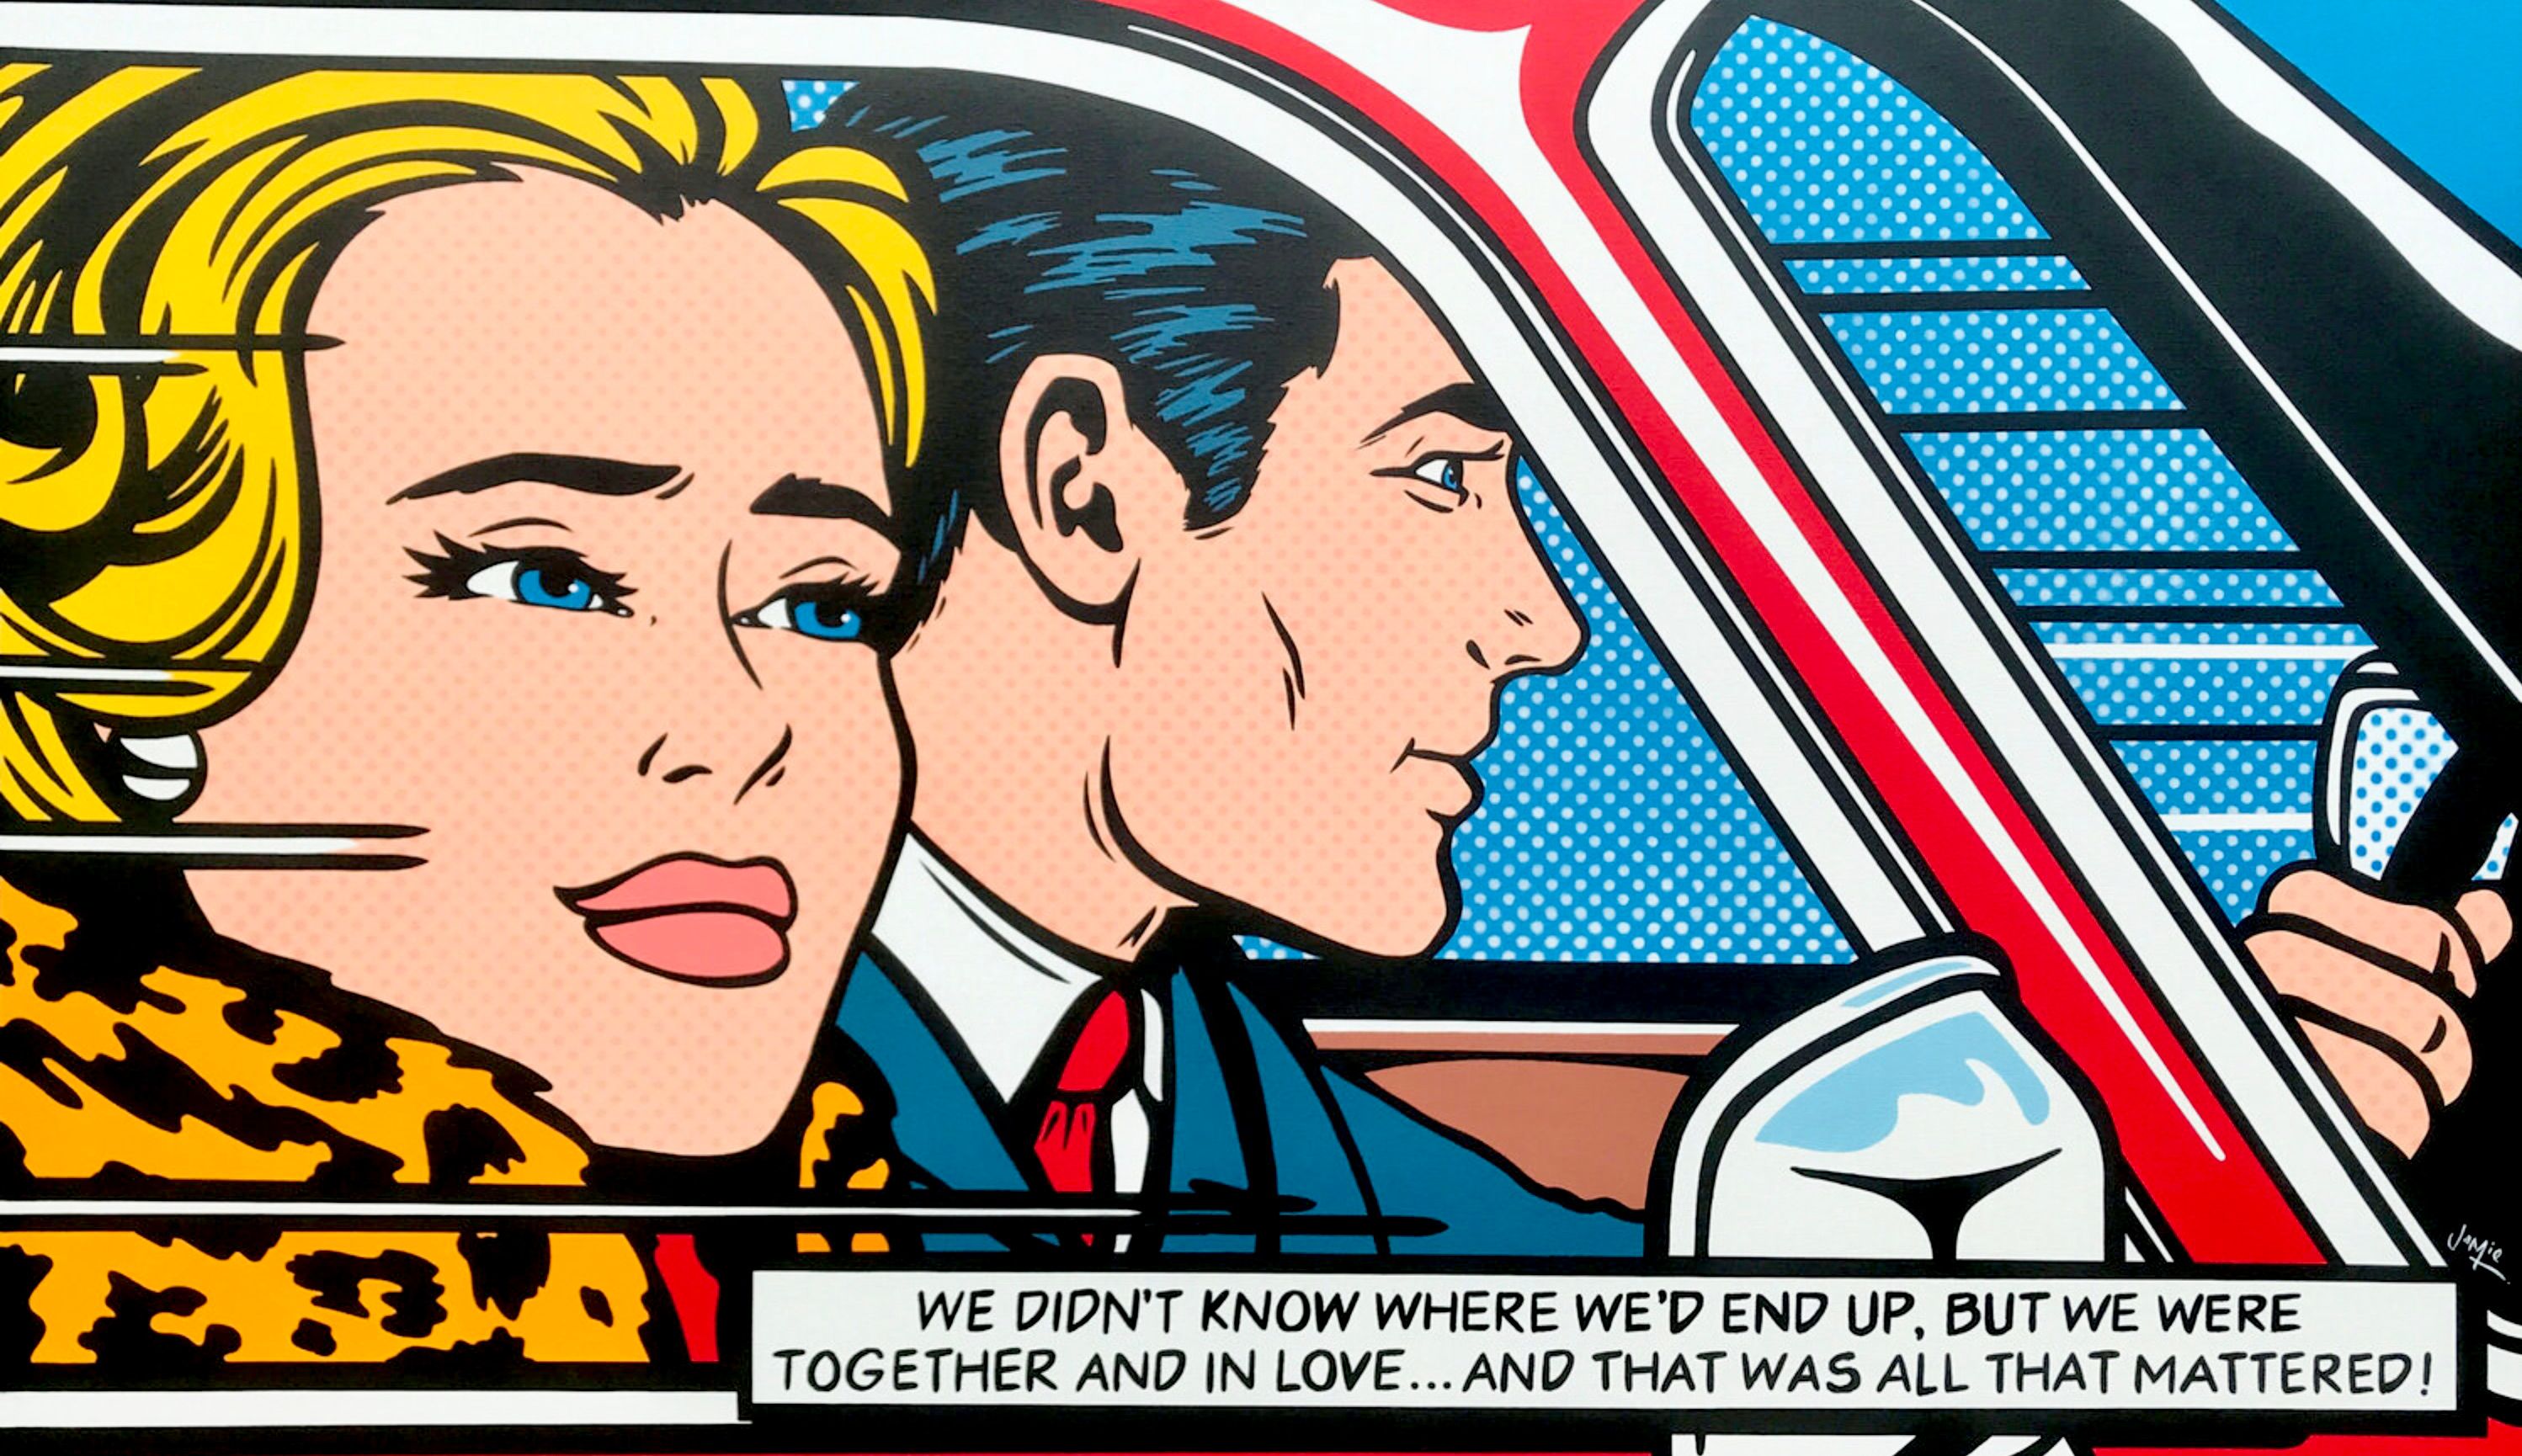 El cuadro pop art "La aventura" de Jamie Lee en estilo cómic con el original diseño de una joven pareja. Imagine la siguiente escena después del cuadro de Lichtenstein "En el coche". Original cuadro pop art en estilo cómic de una joven pareja enamorada que se va de viaje por carretera.